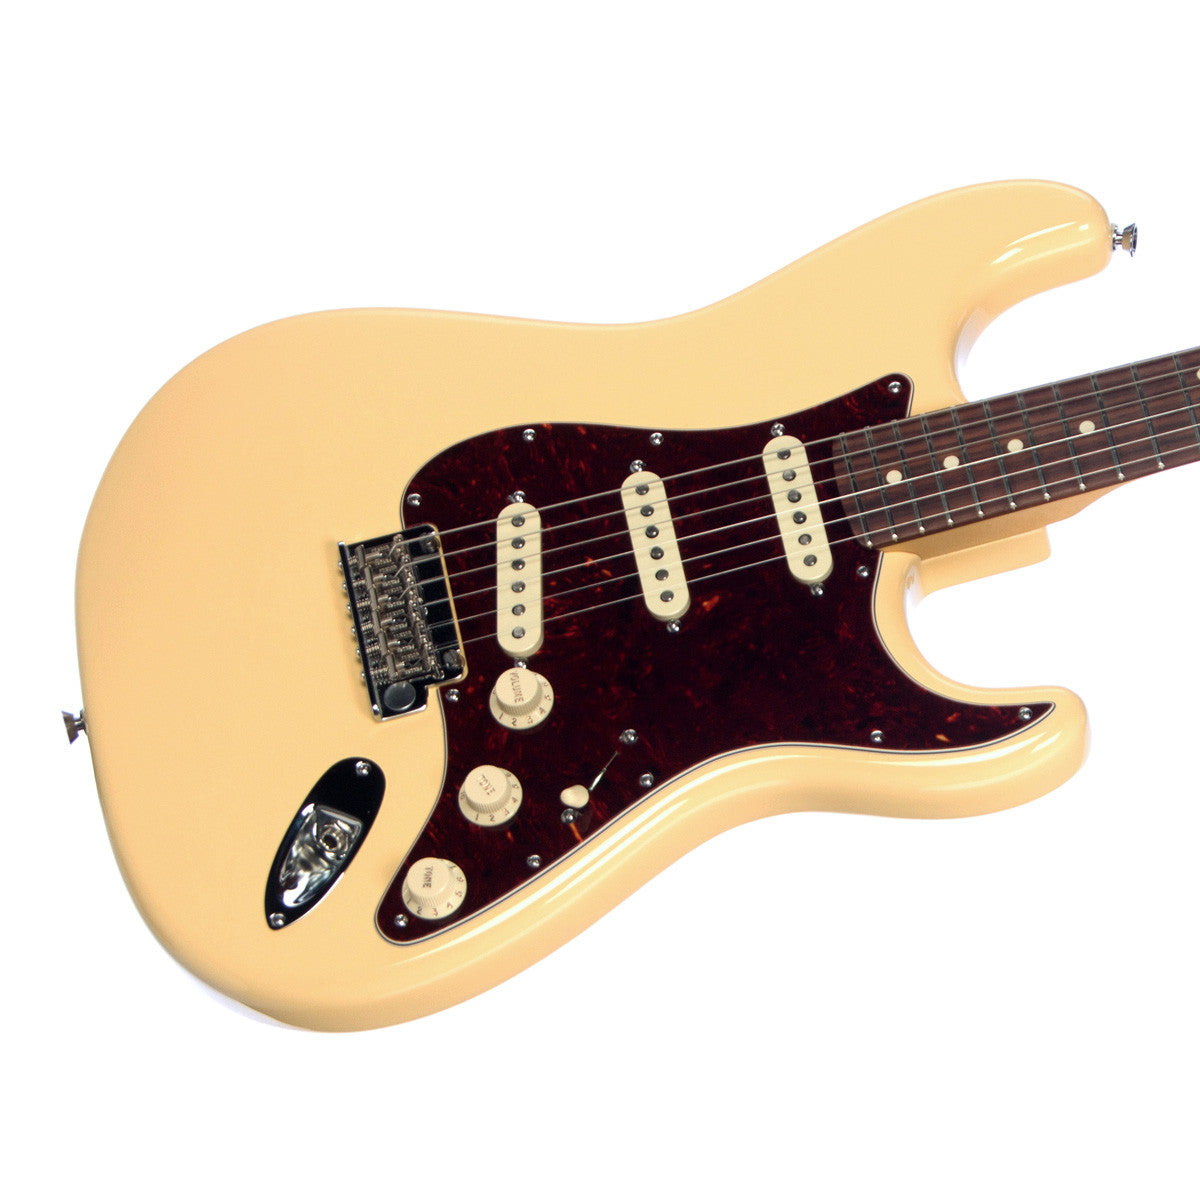 3 Way Quality Level Switch w/ Screws for Fender Strat Tele b